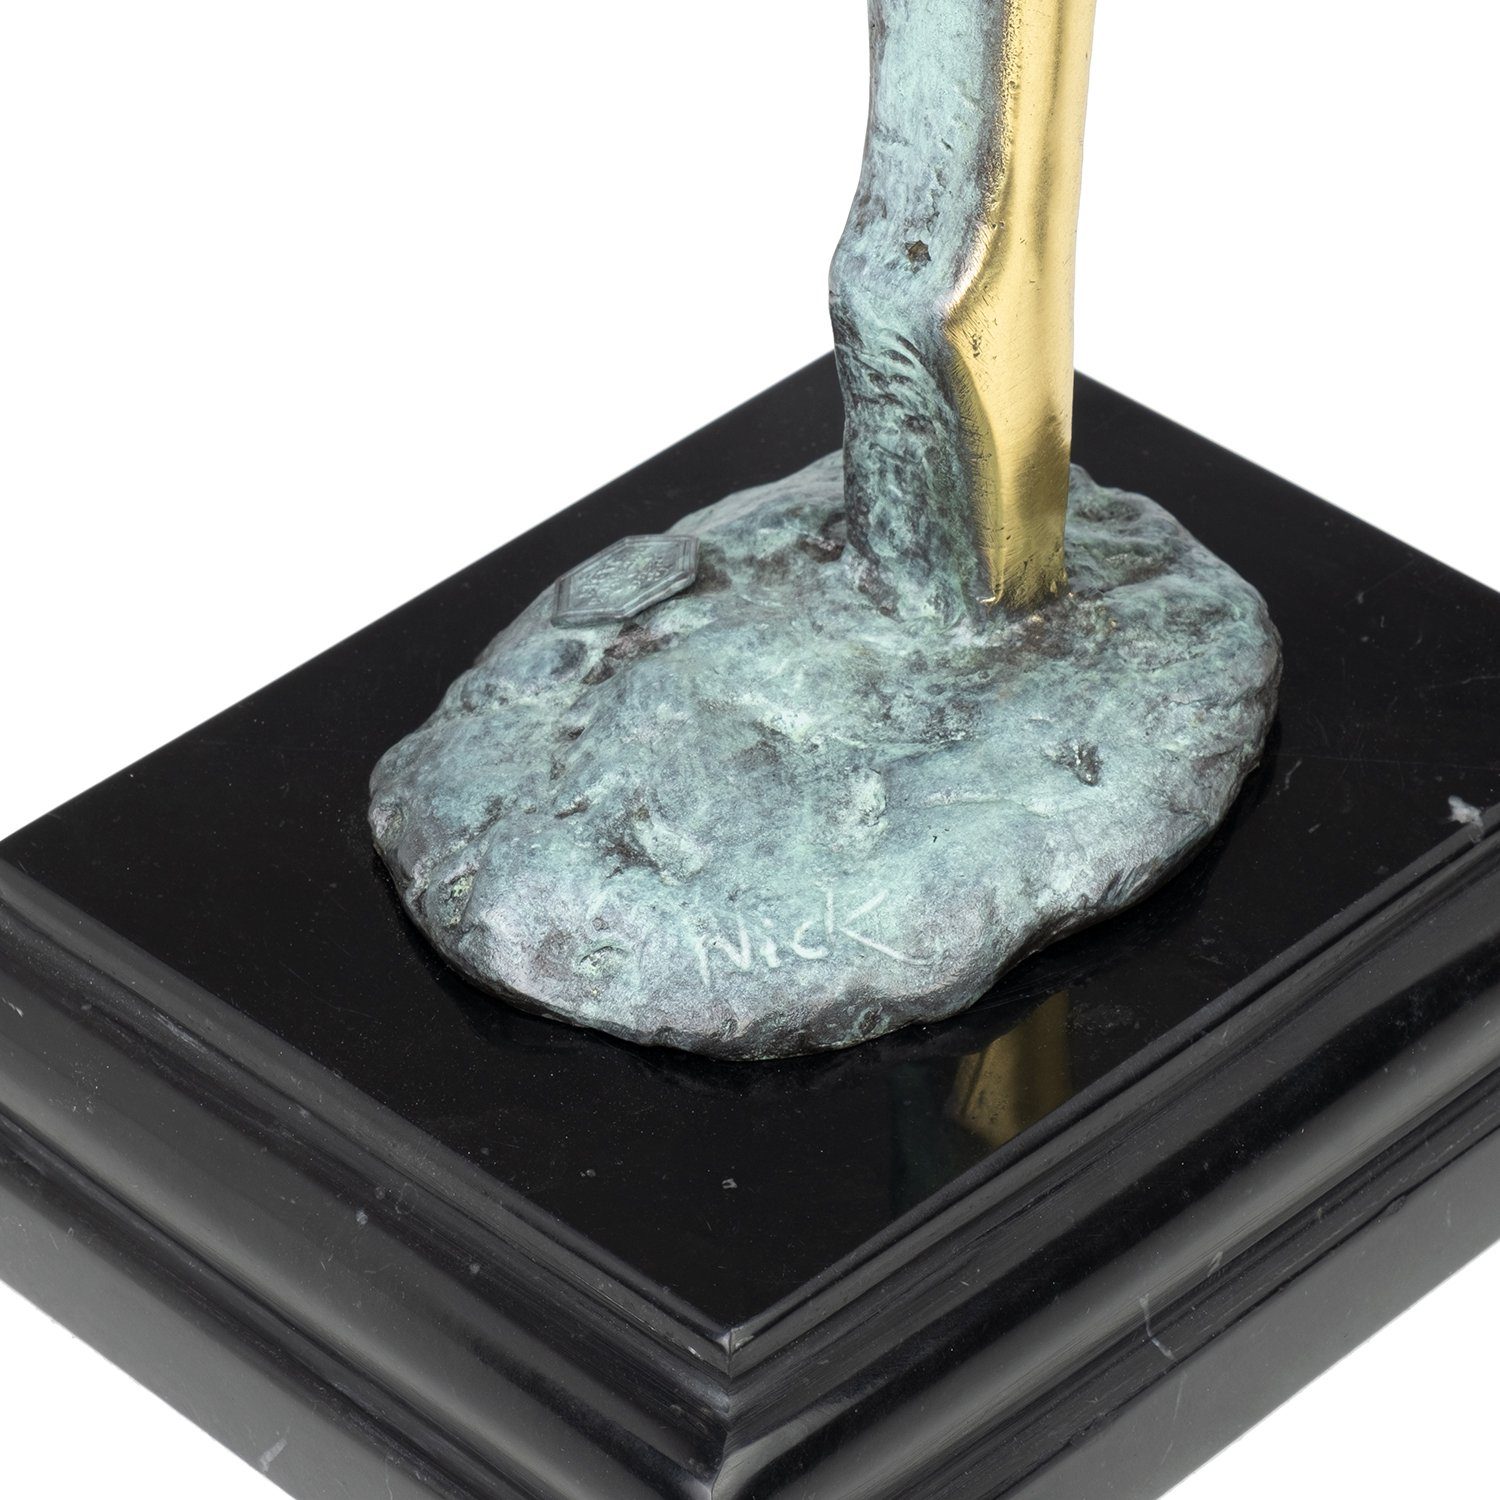 Schreibtisch Moritz Figuren Weiblicher Deko Vitrine Bronzefigur Regal Dekofigur Skulptur für Akt Bronzefigur abstrakt,